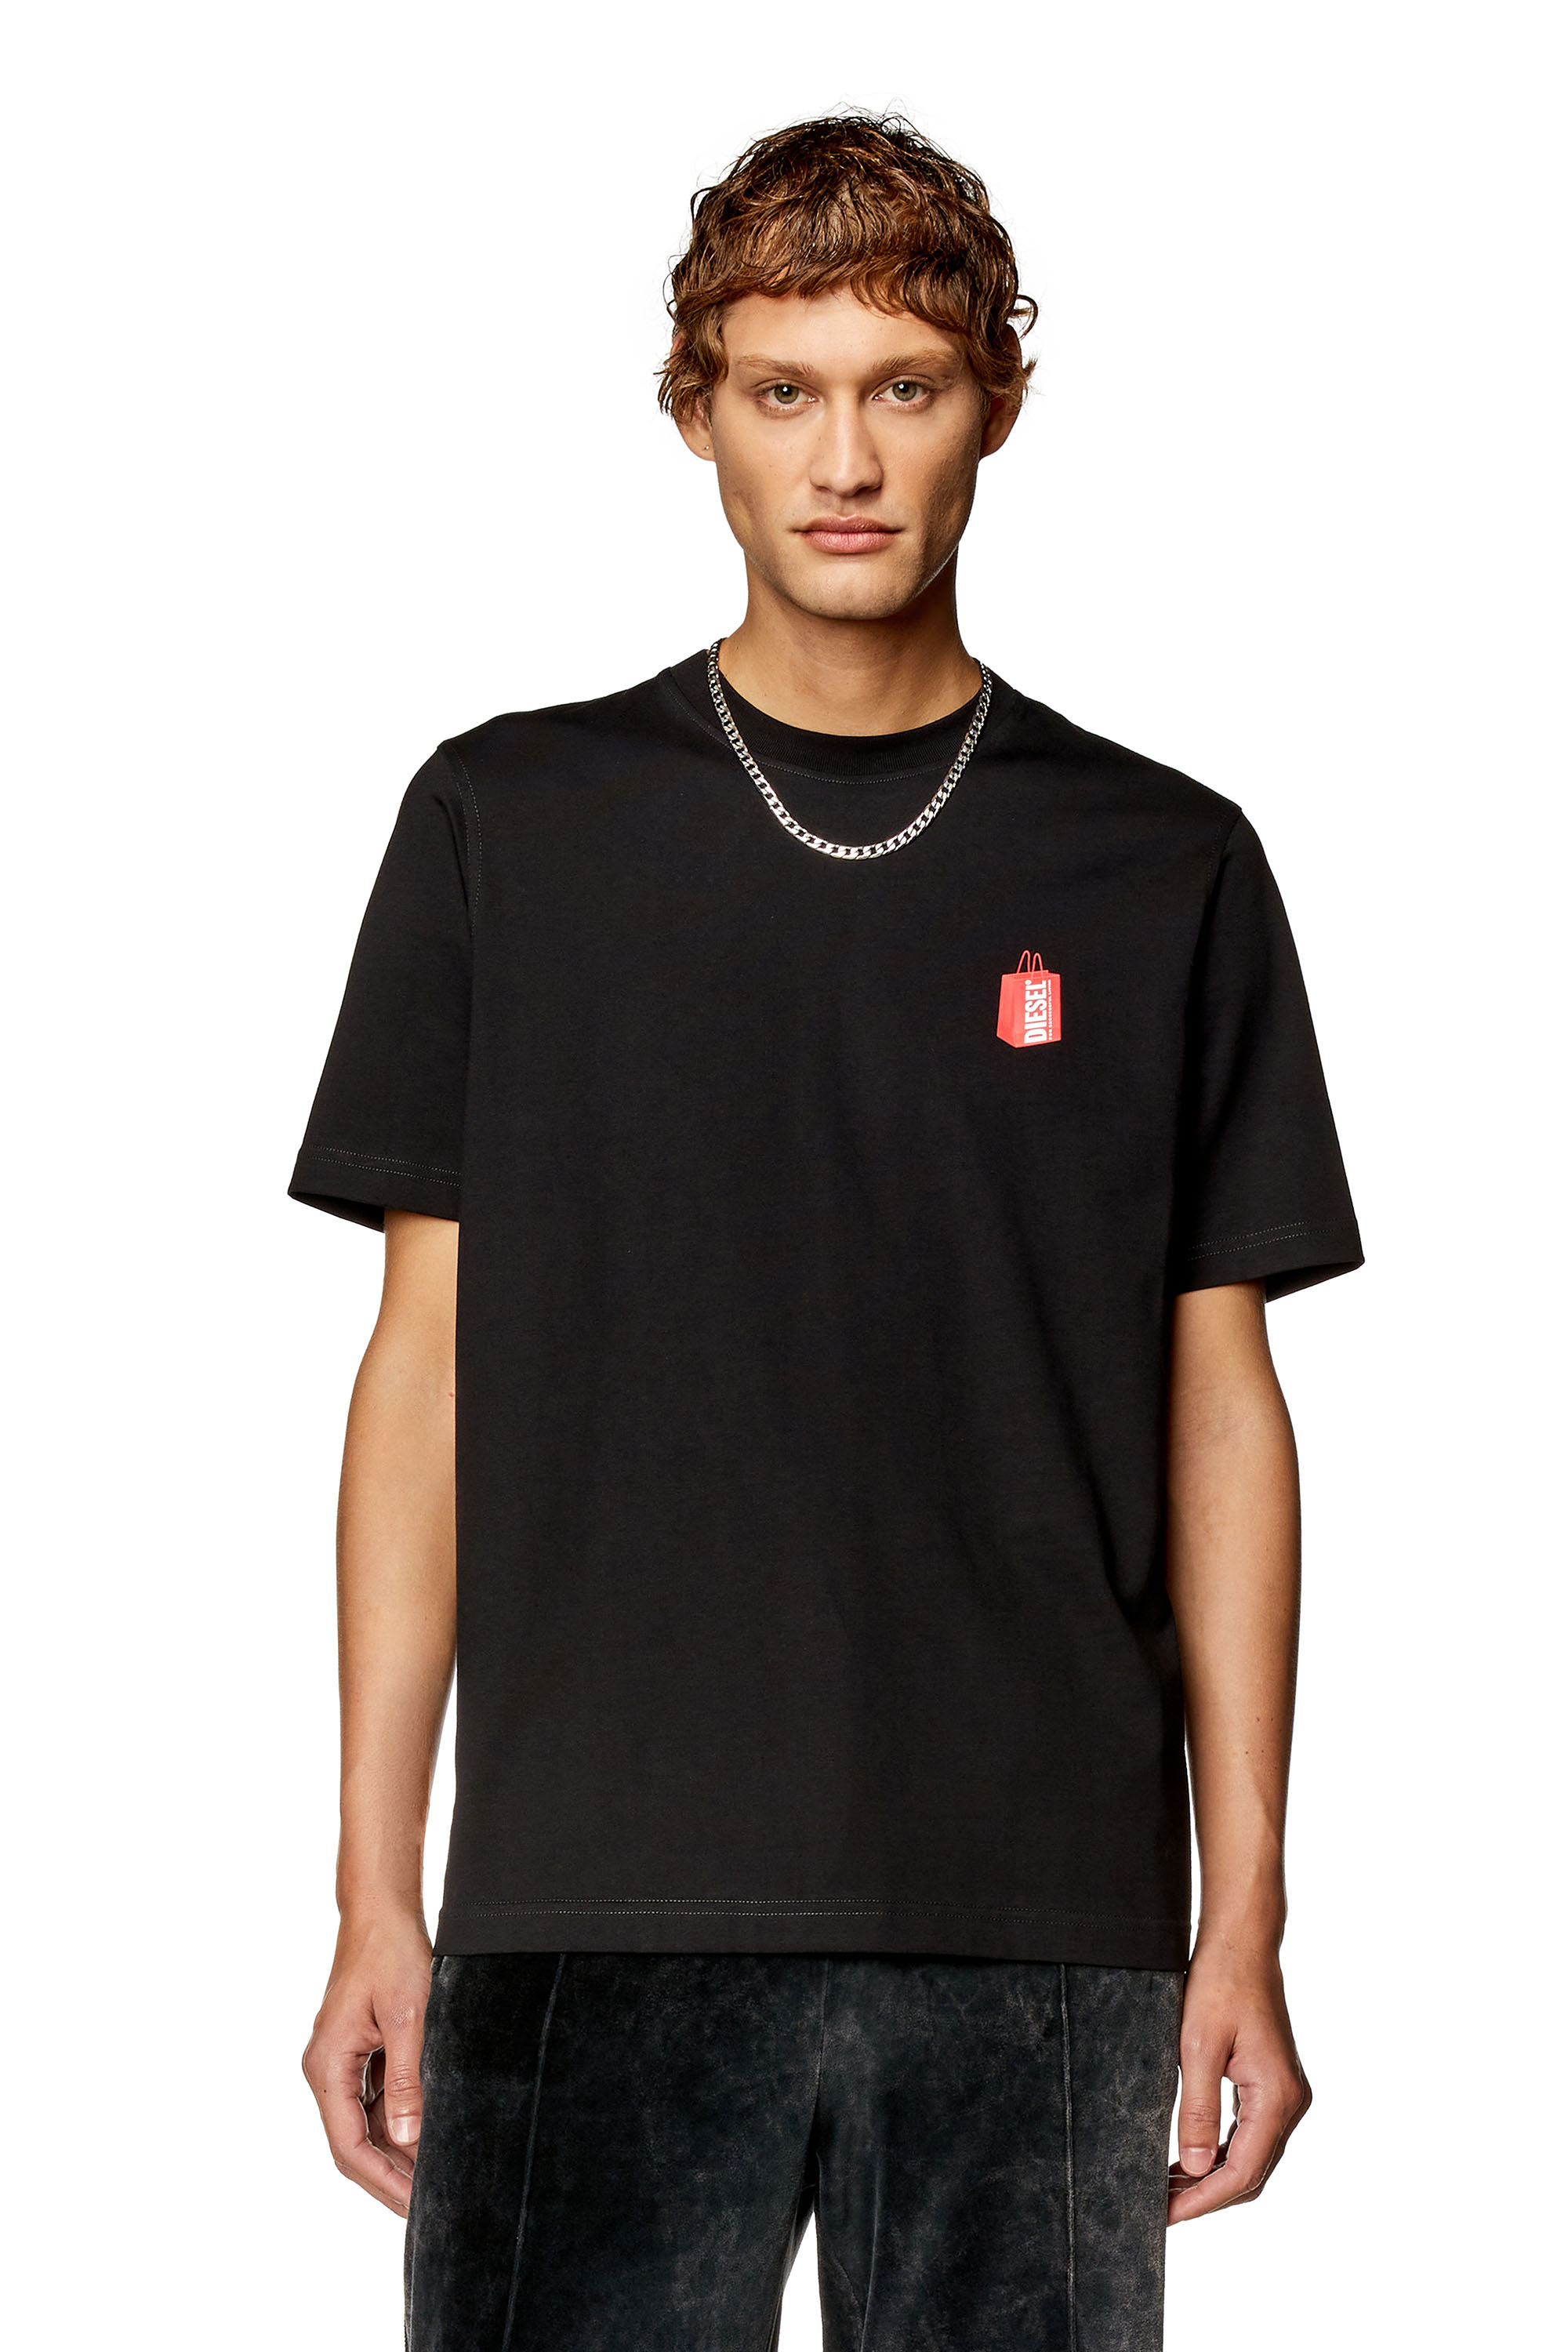 Diesel - Camiseta con estampado de bolsa de Diesel - Camisetas - Hombre - Negro